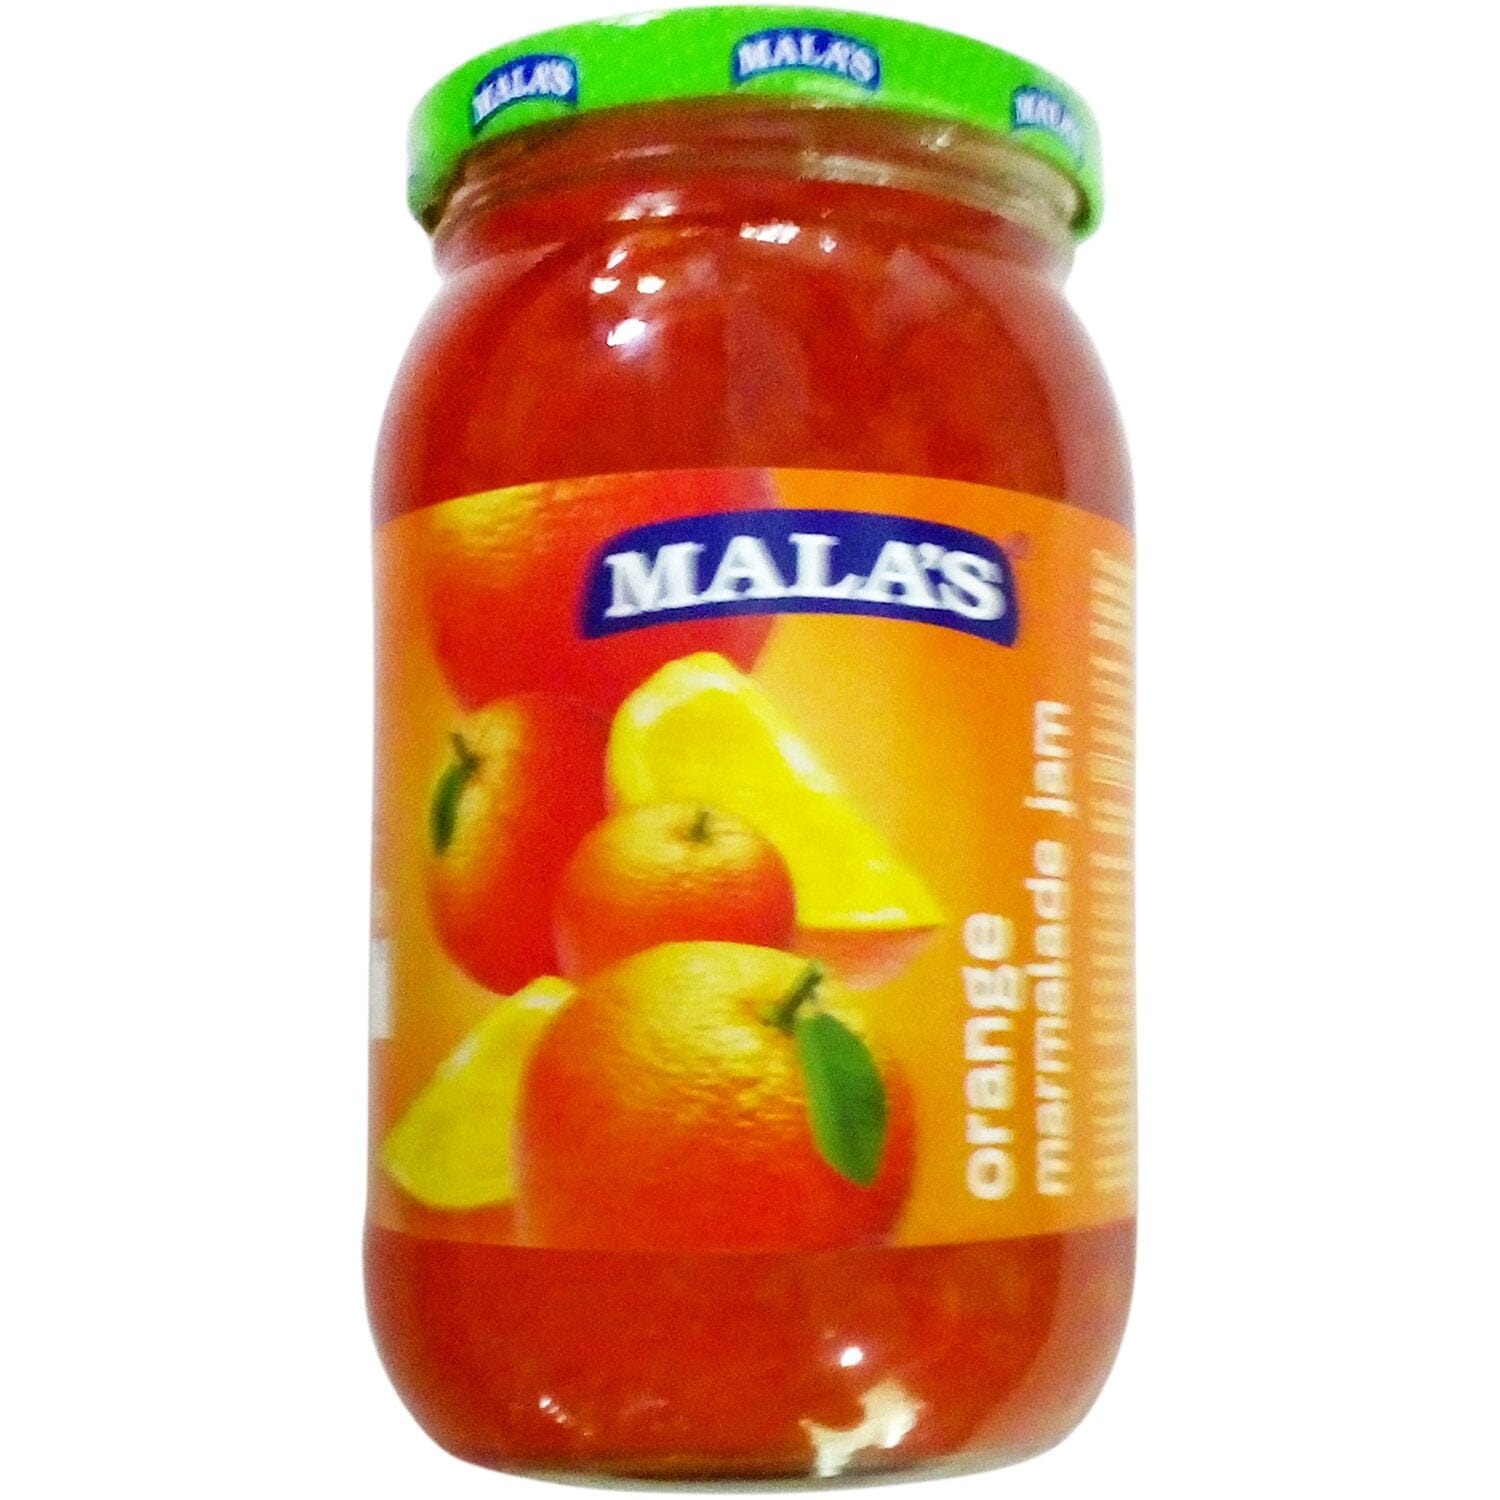 Malas Orange Marmalade Jam 500g Glass Jar JAM Mala's